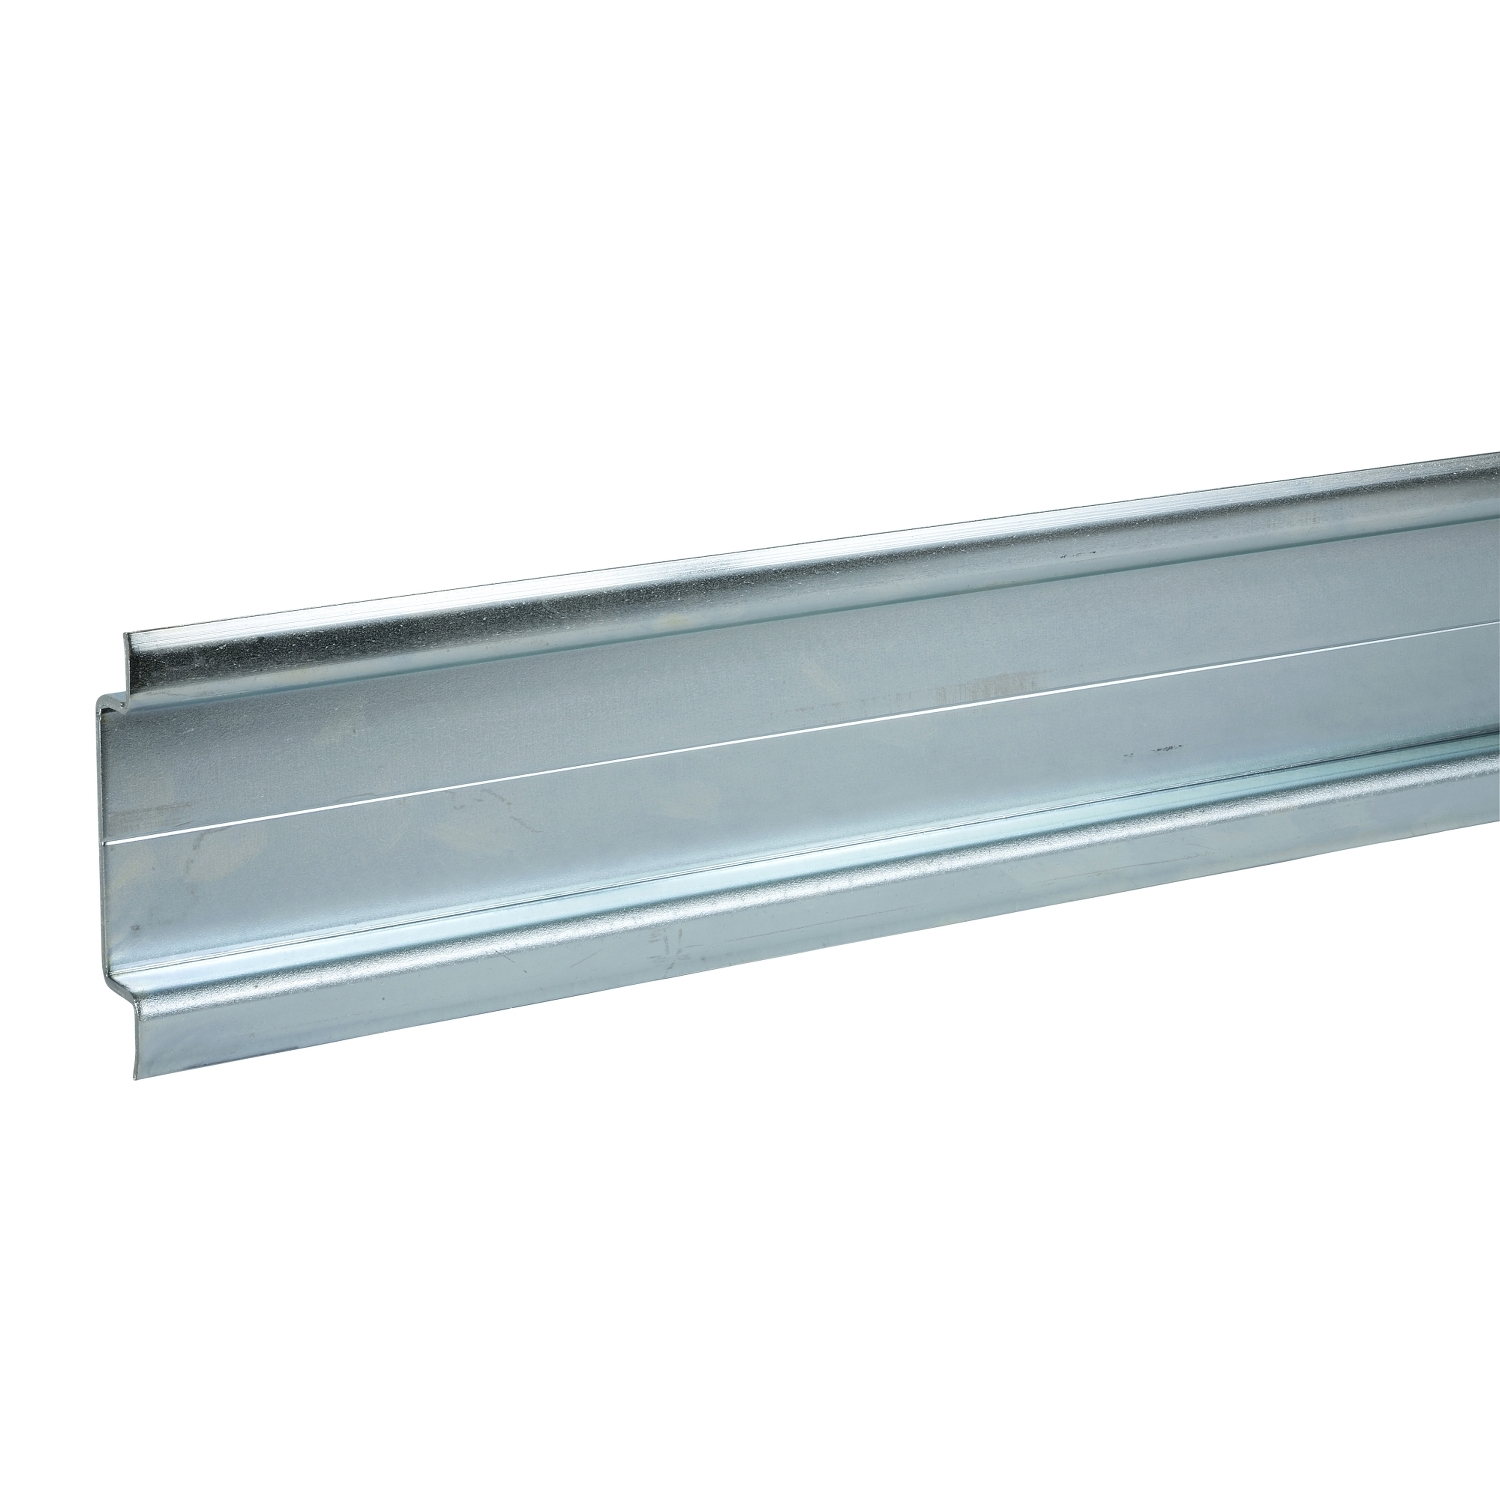 Din rail - steel - length 2000 mm width 75 mm height 15 mm